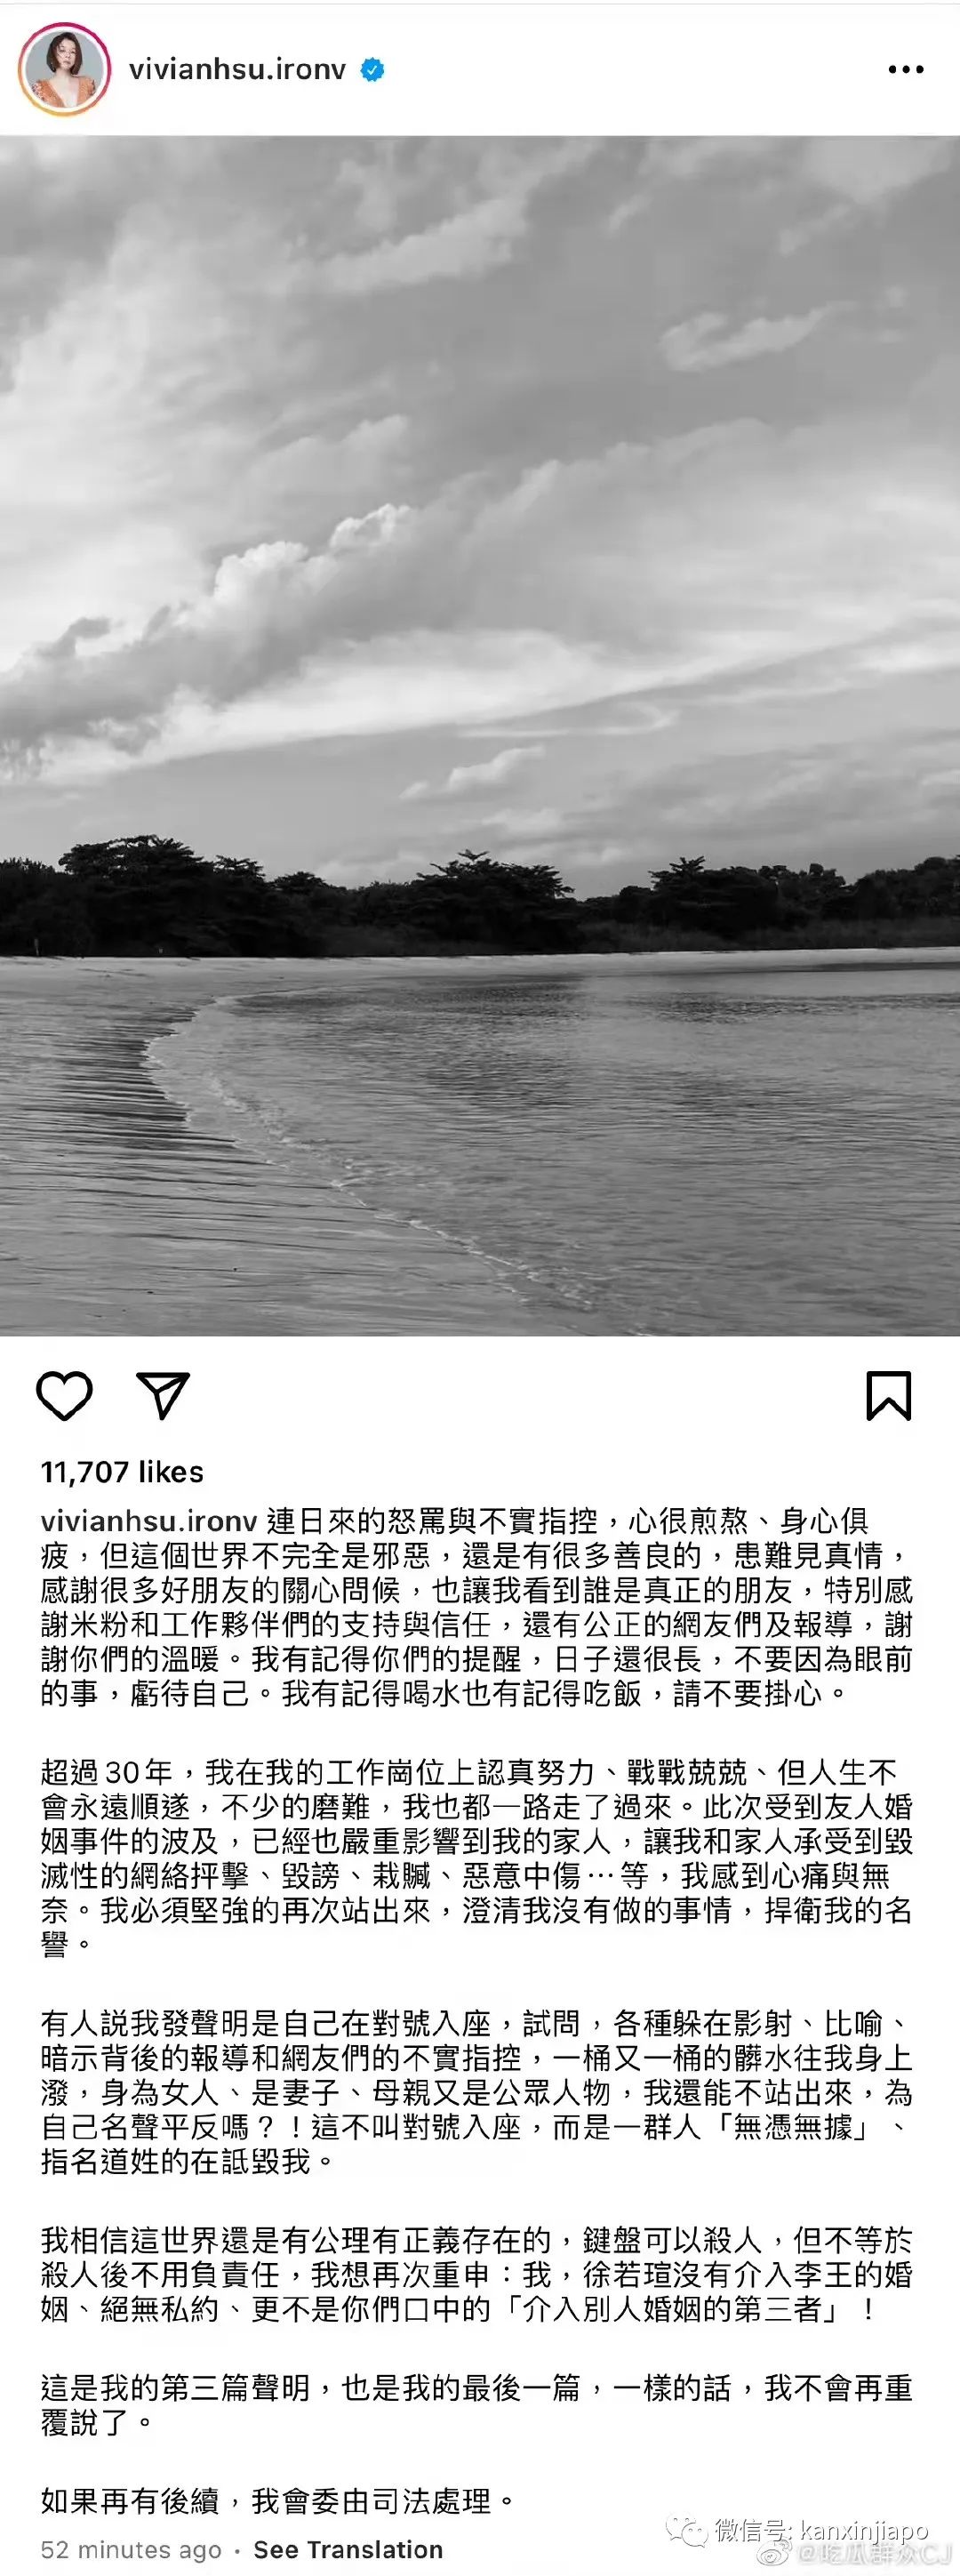 卷入王力宏风波的新加坡歌手Yumi被传吞药自杀，徐若瑄再度发文澄清